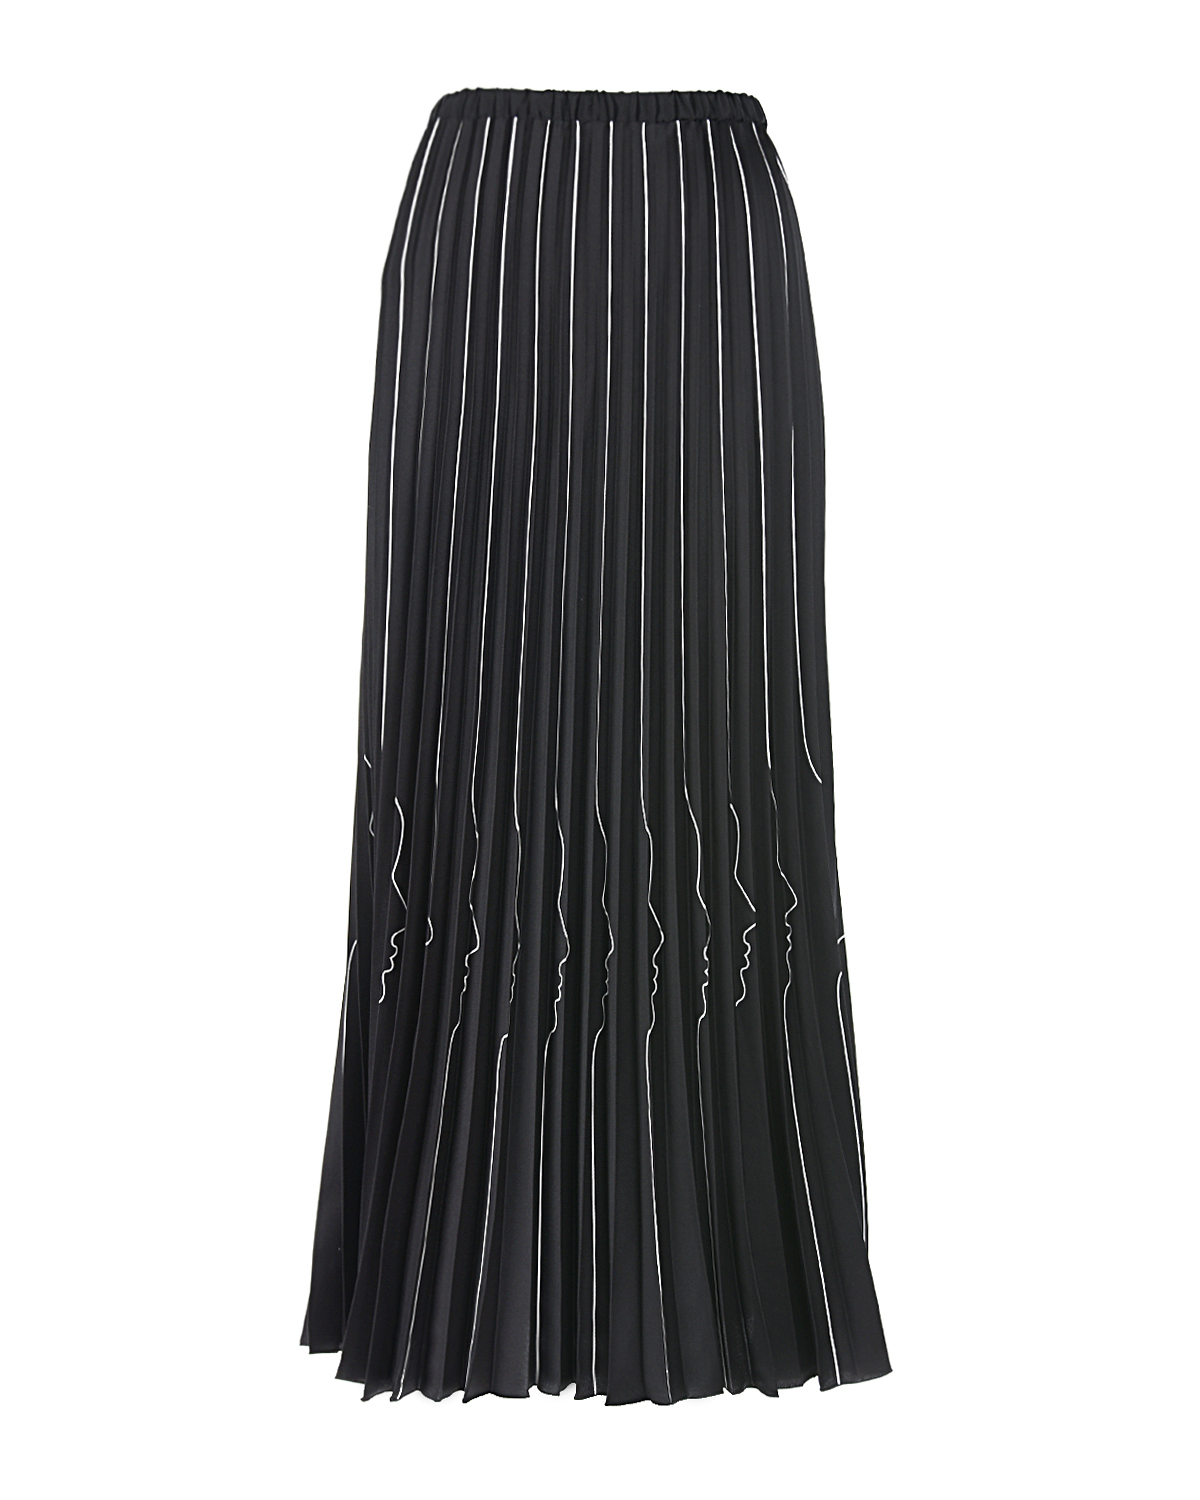 Юбка плиссе с изображением профилей Vivetta, размер 42, цвет черный - фото 1